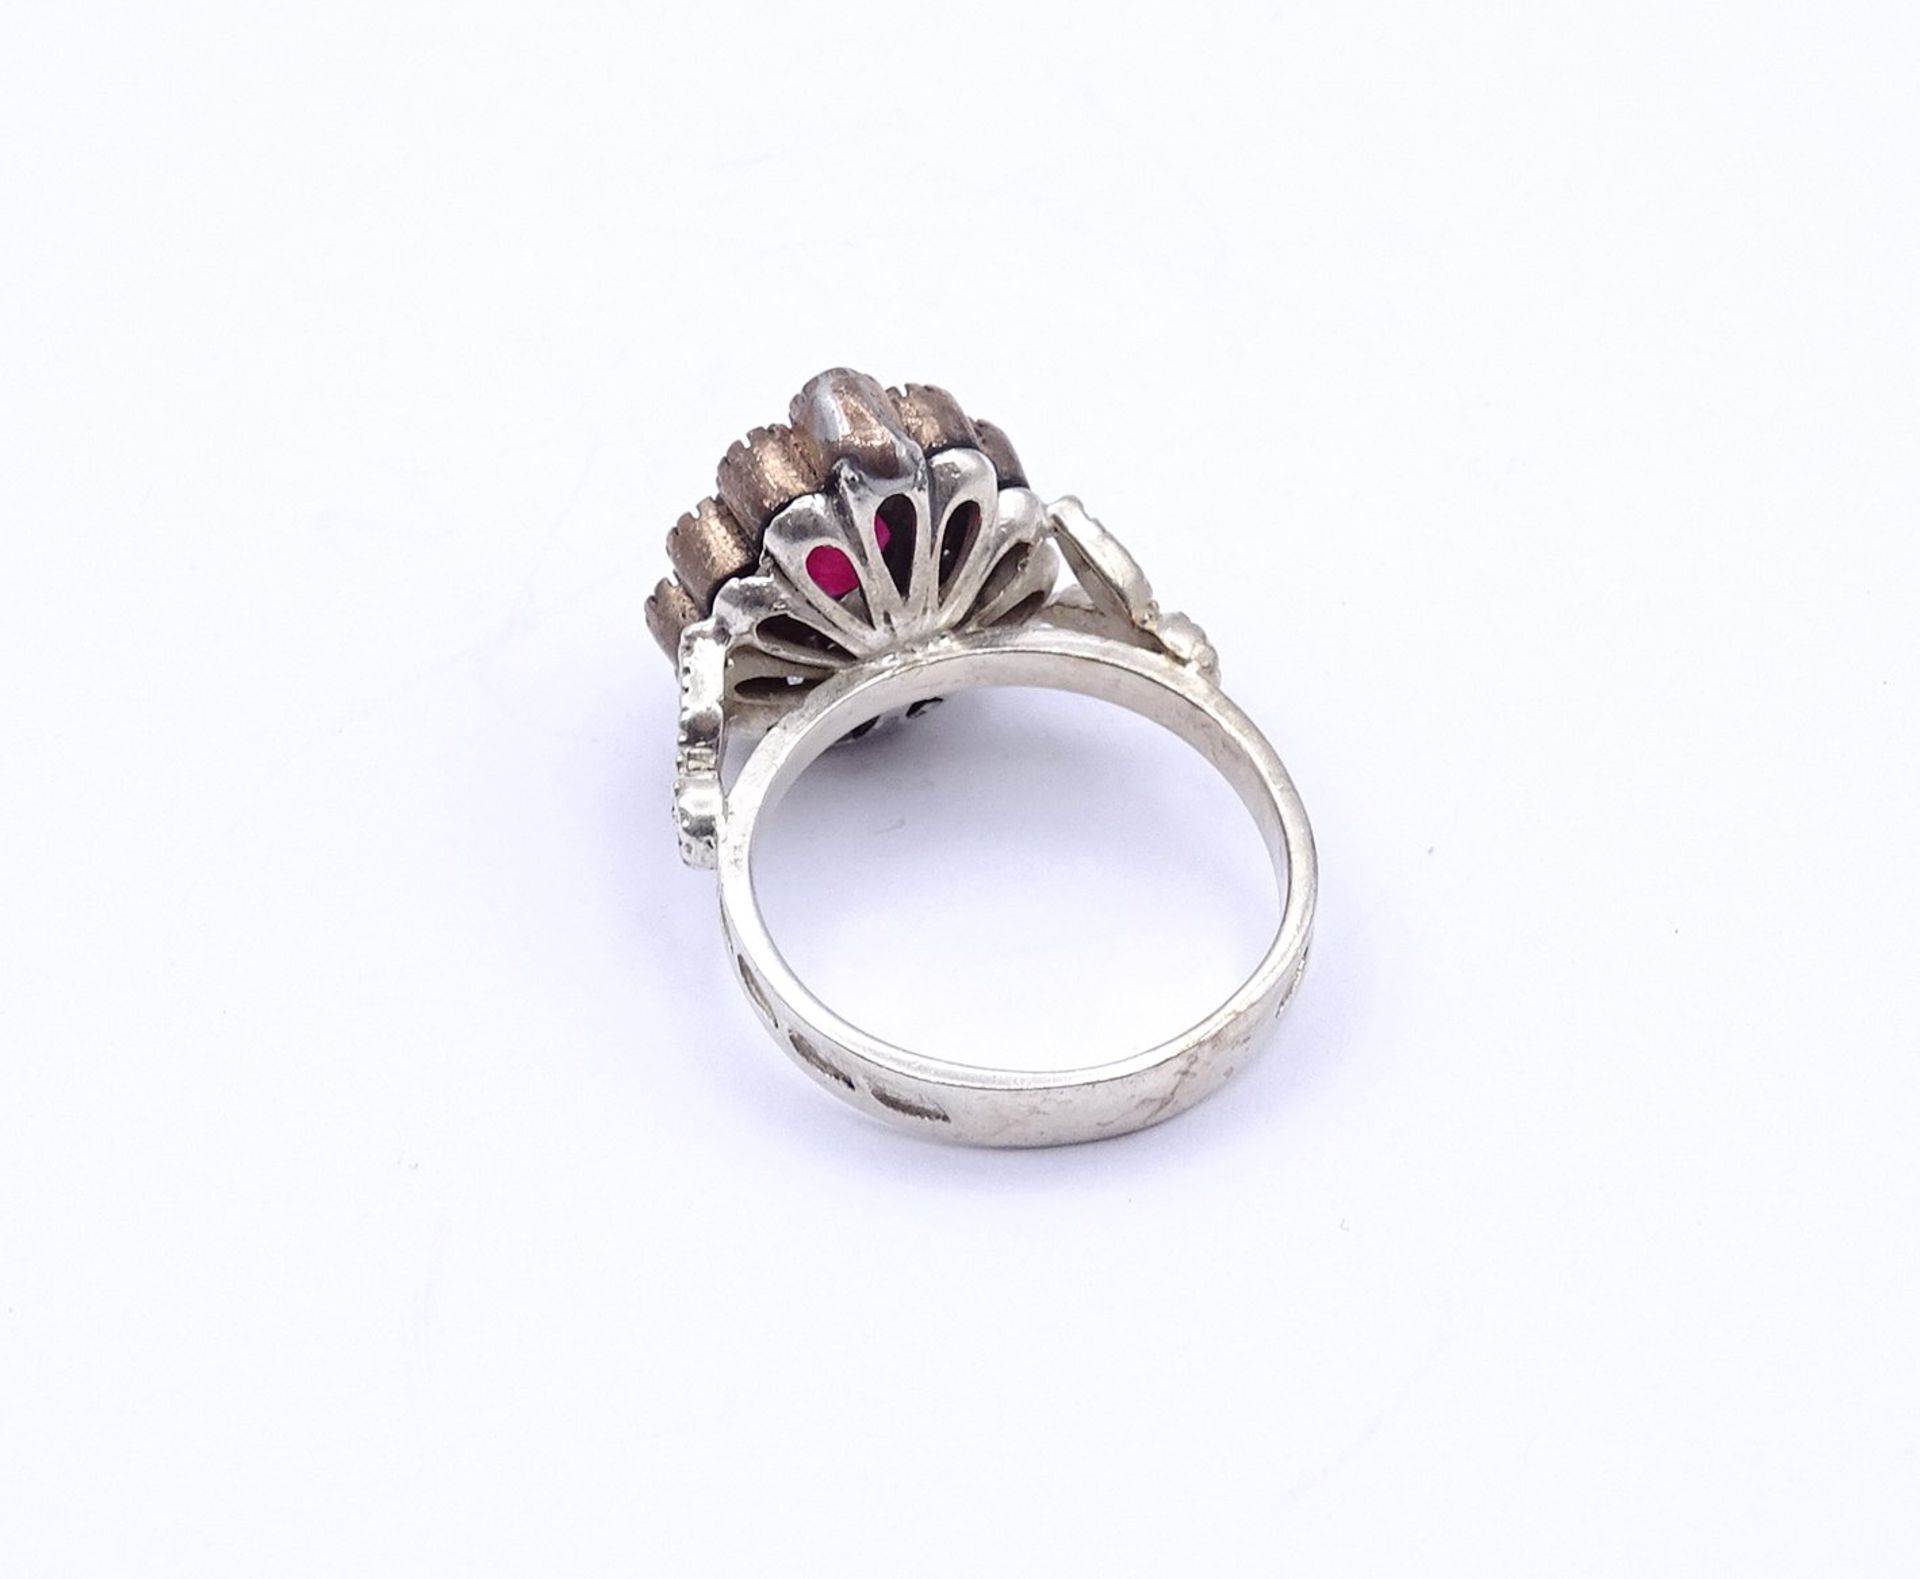 Silber Ring mit Rubin und weißen Steinen, 5,8g., RG 55 - Bild 4 aus 4